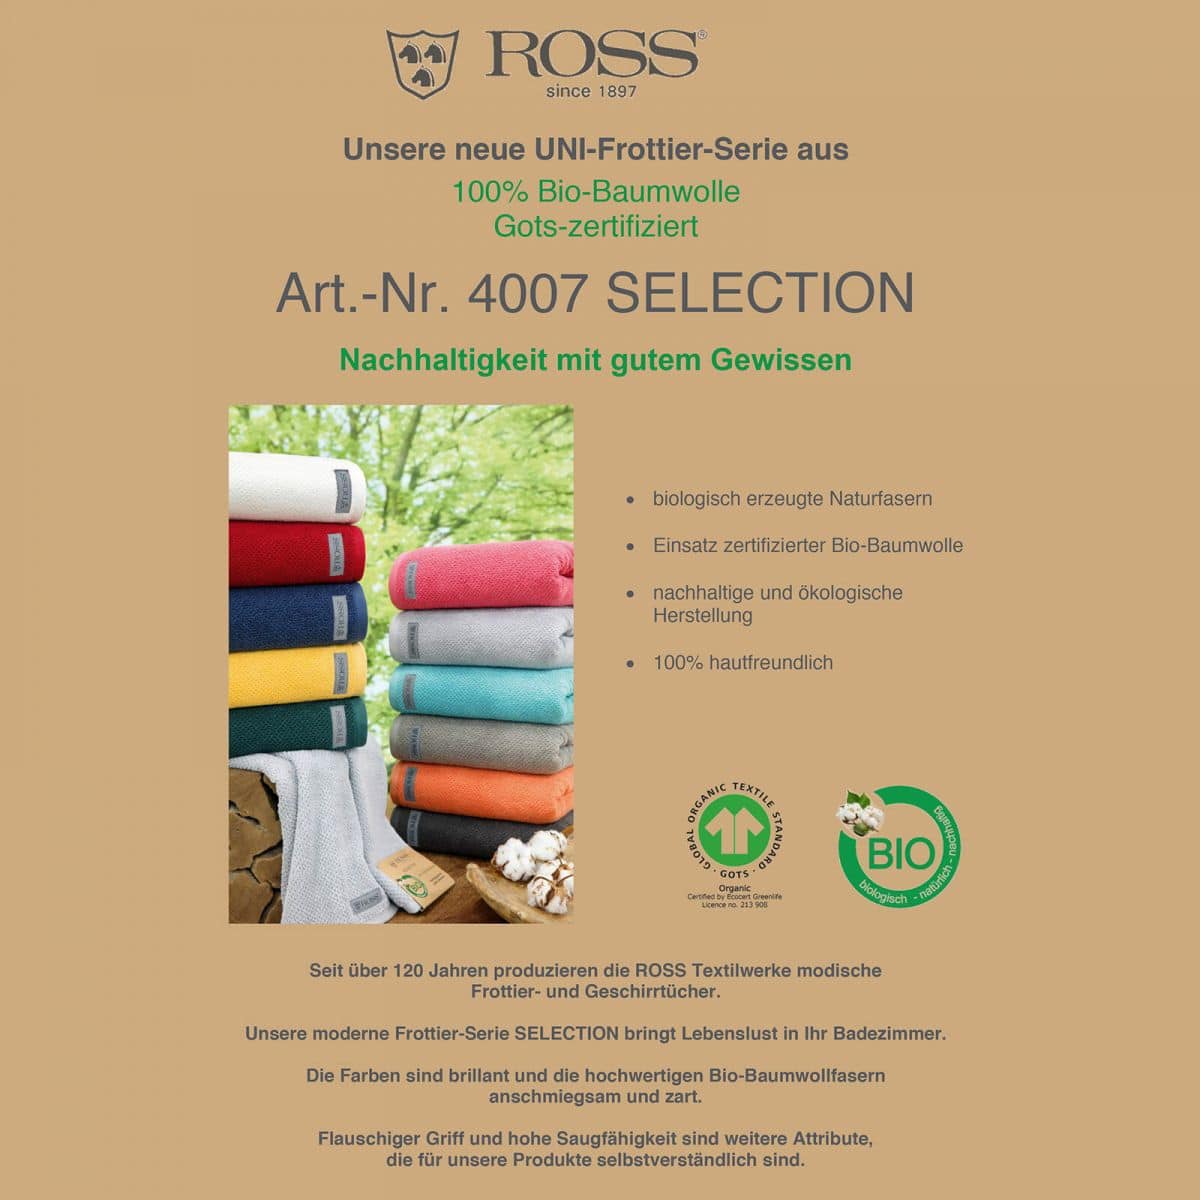 Ross Bio-Baumwoll Handtücher Selection günstig kaufen Shop bei online Bettwaren